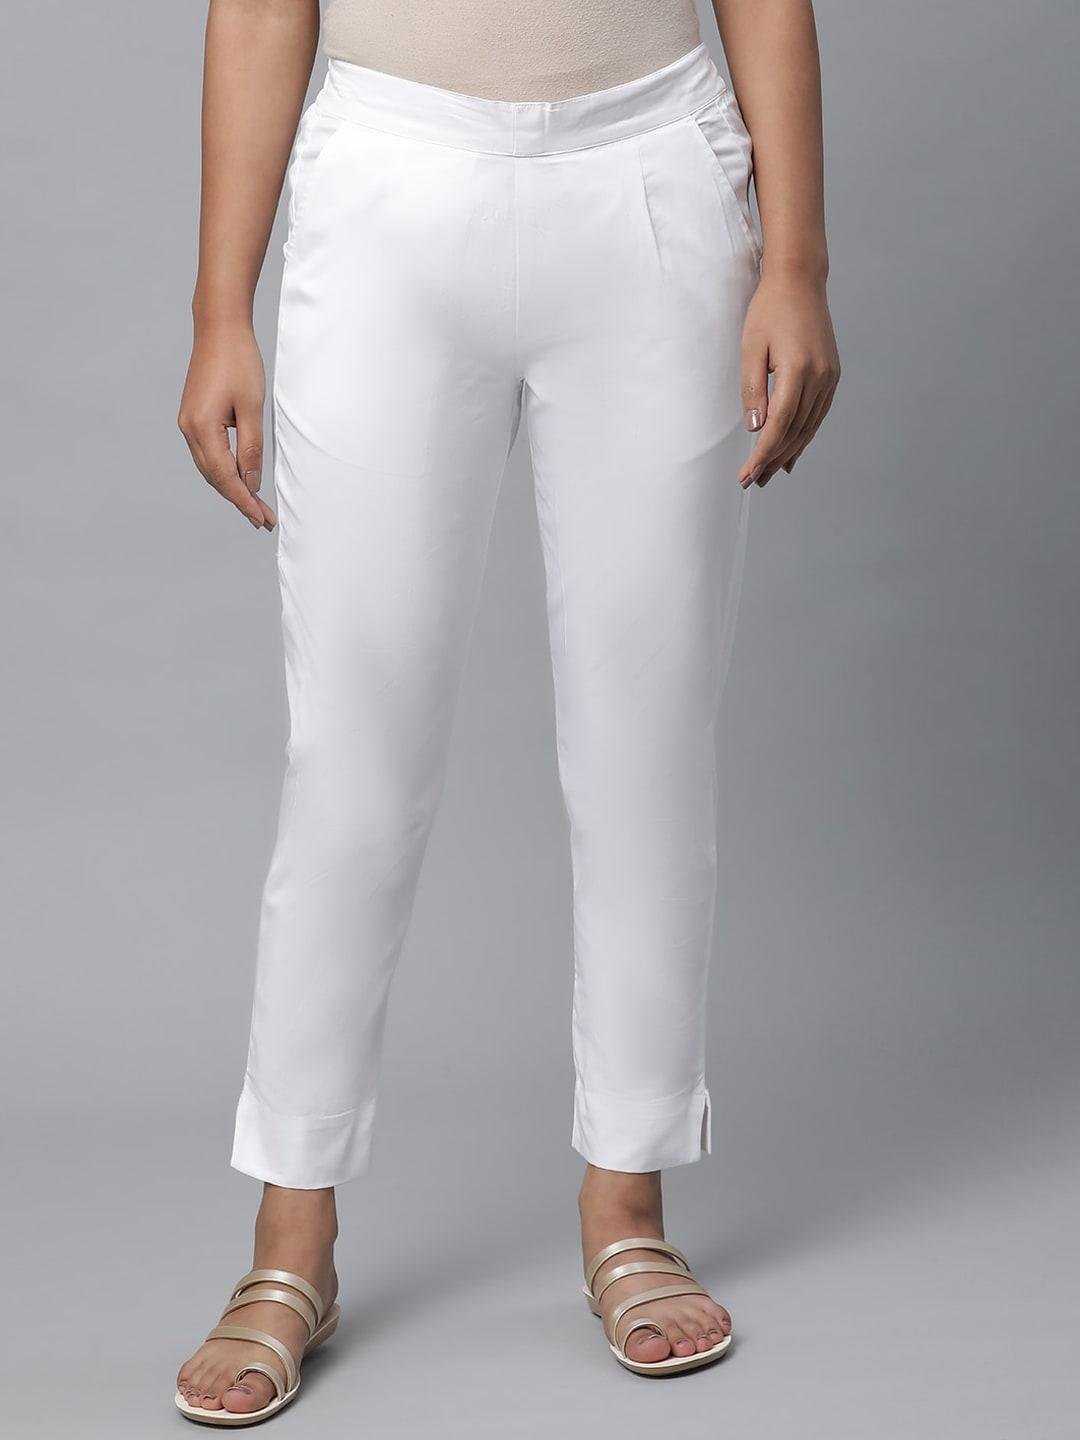 elleven-women-mid-rise-ethnic-pure-cotton-trousers